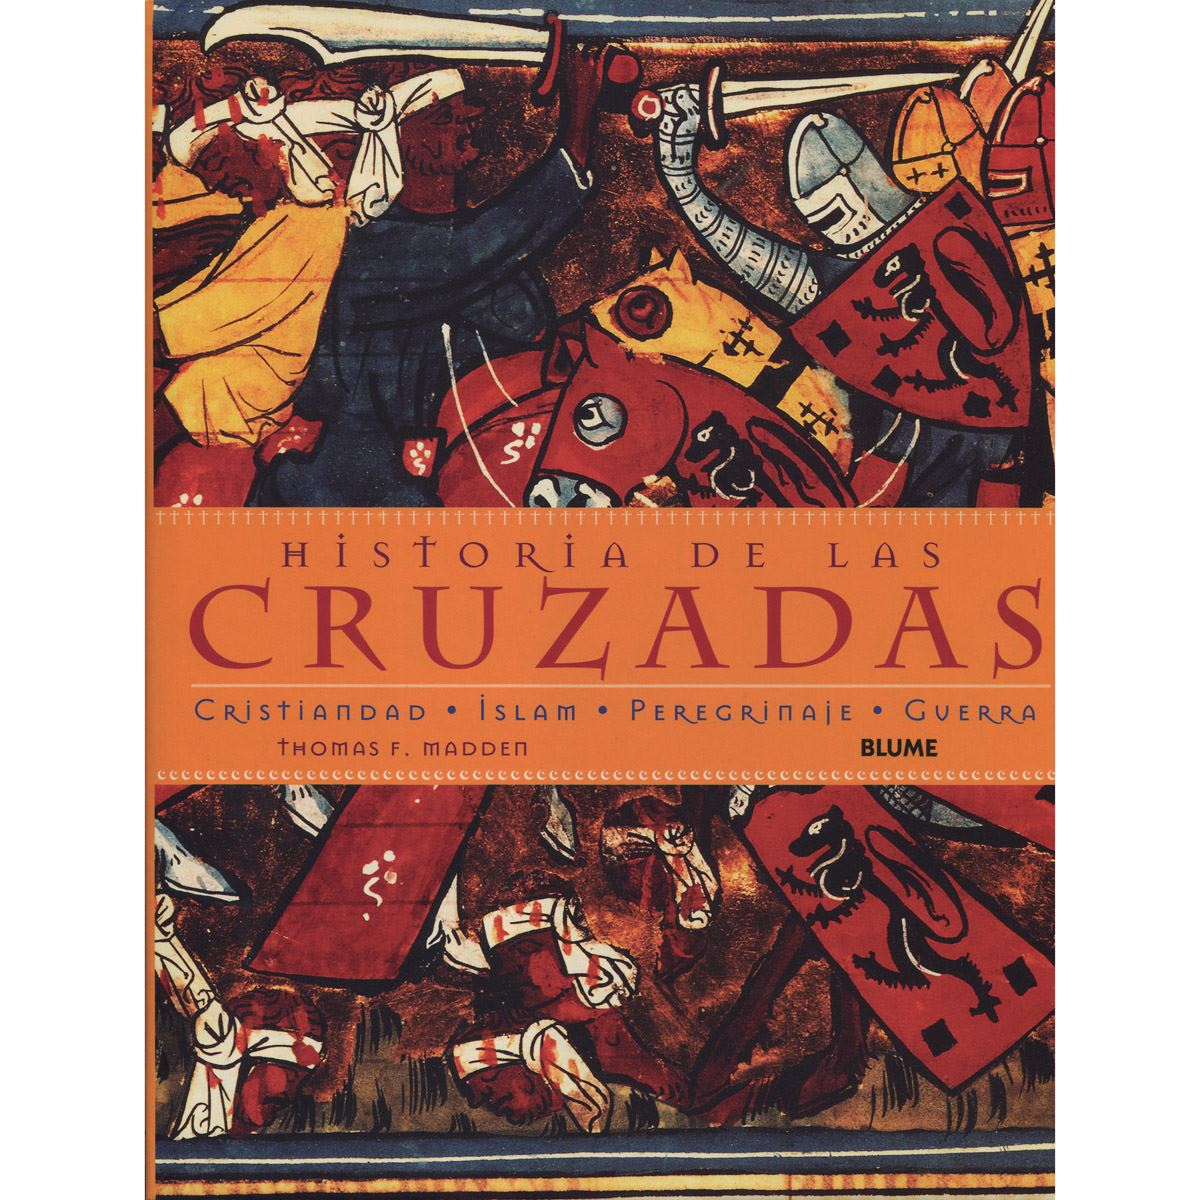 Historia de las cruzadas